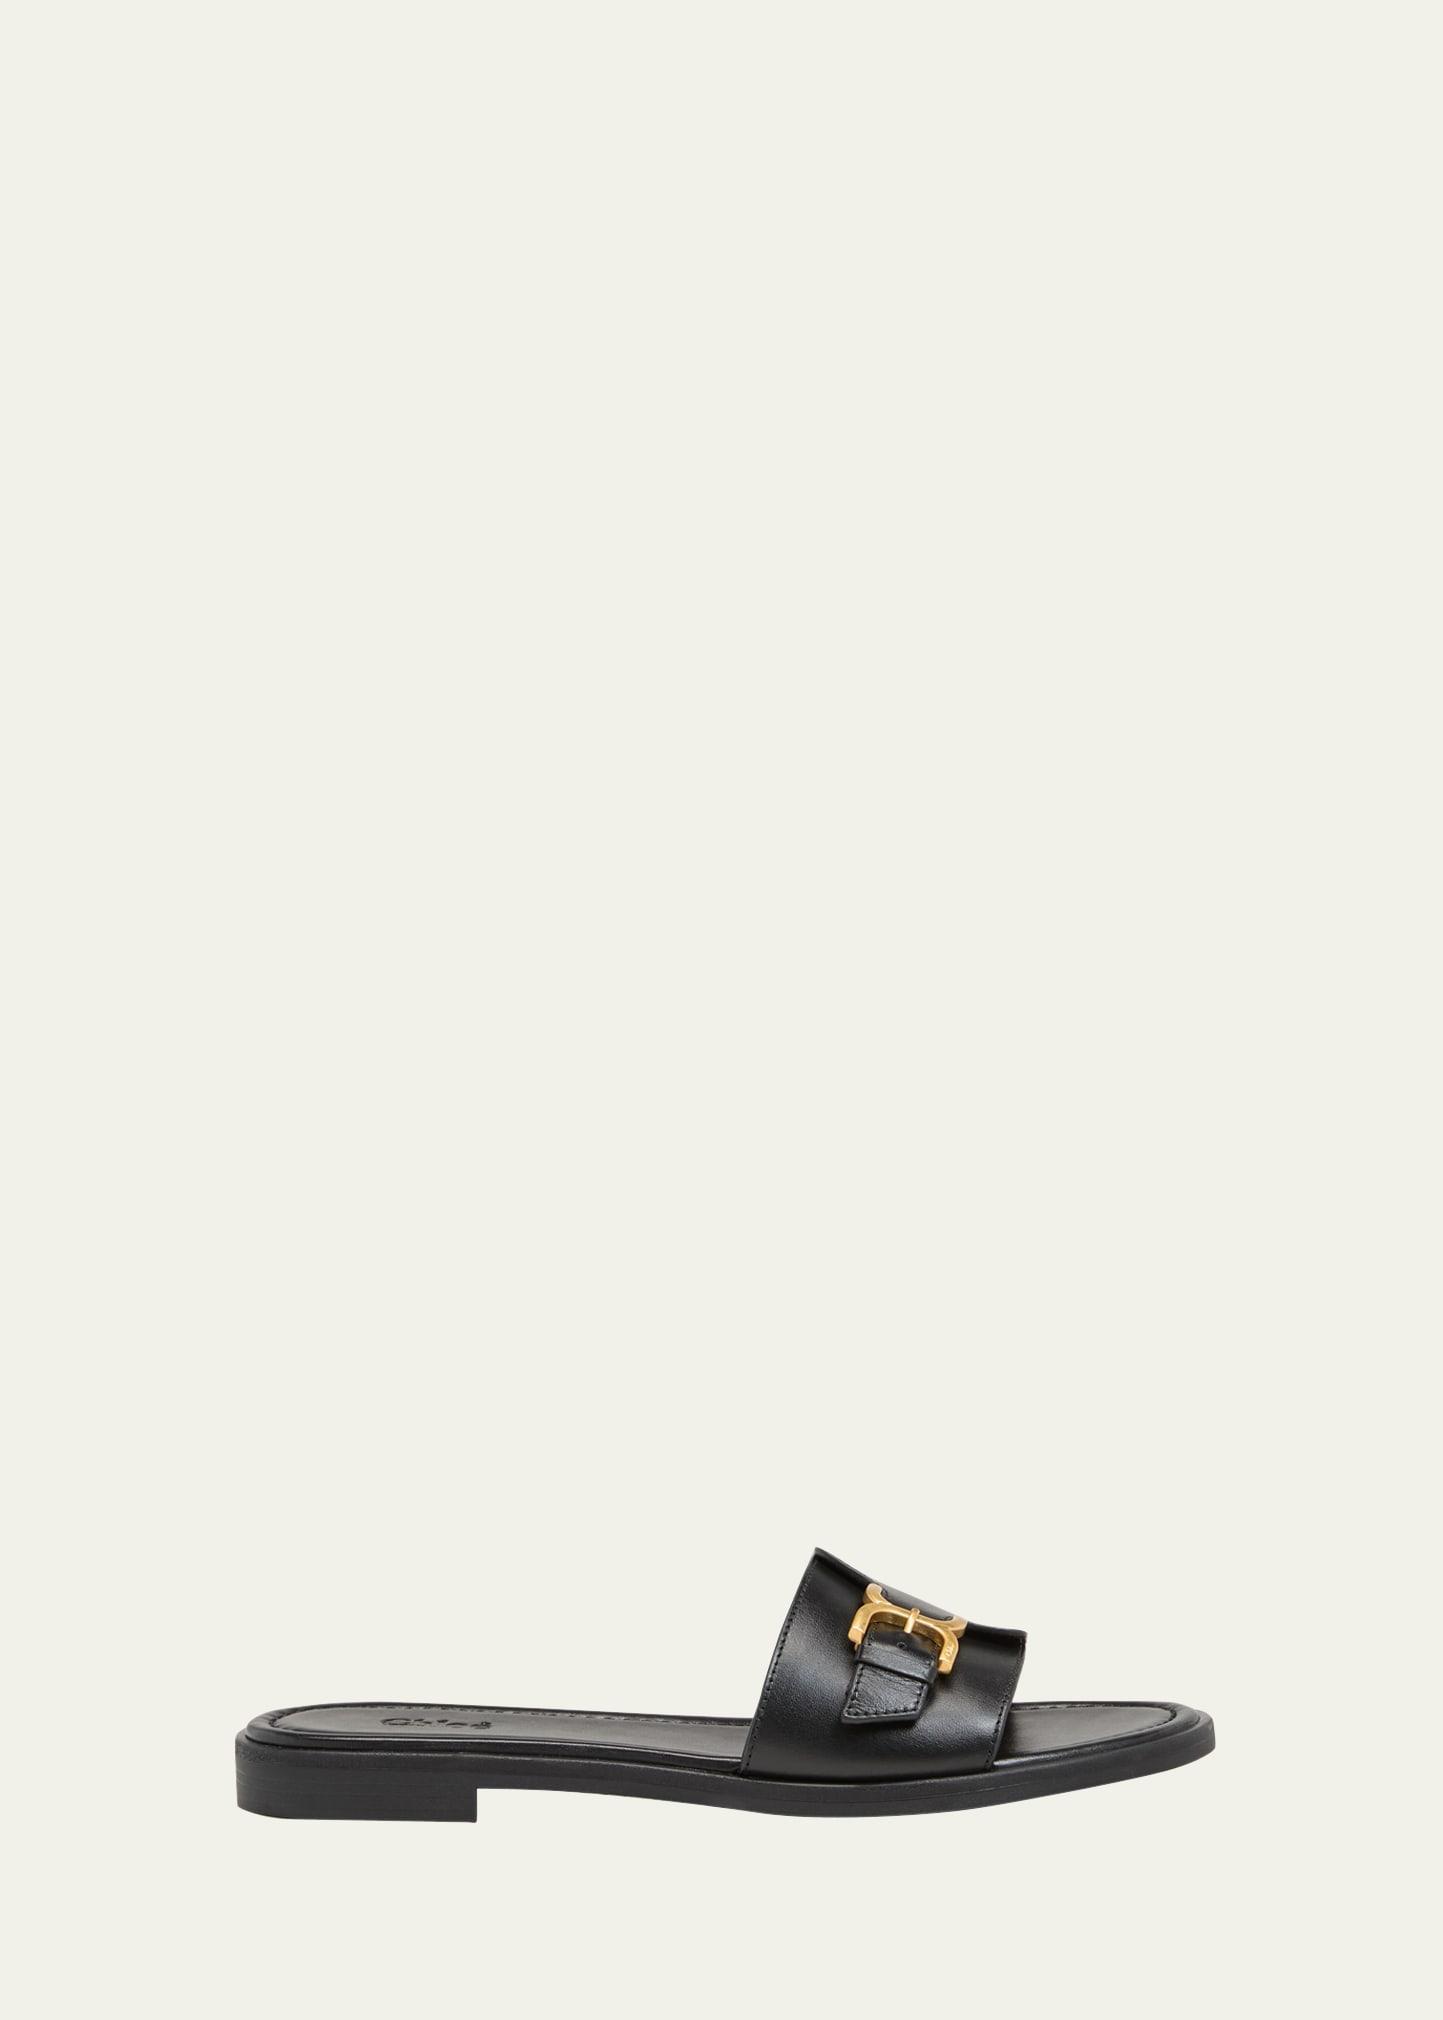 Safinanu Leather Flat Slide Sandals Product Image